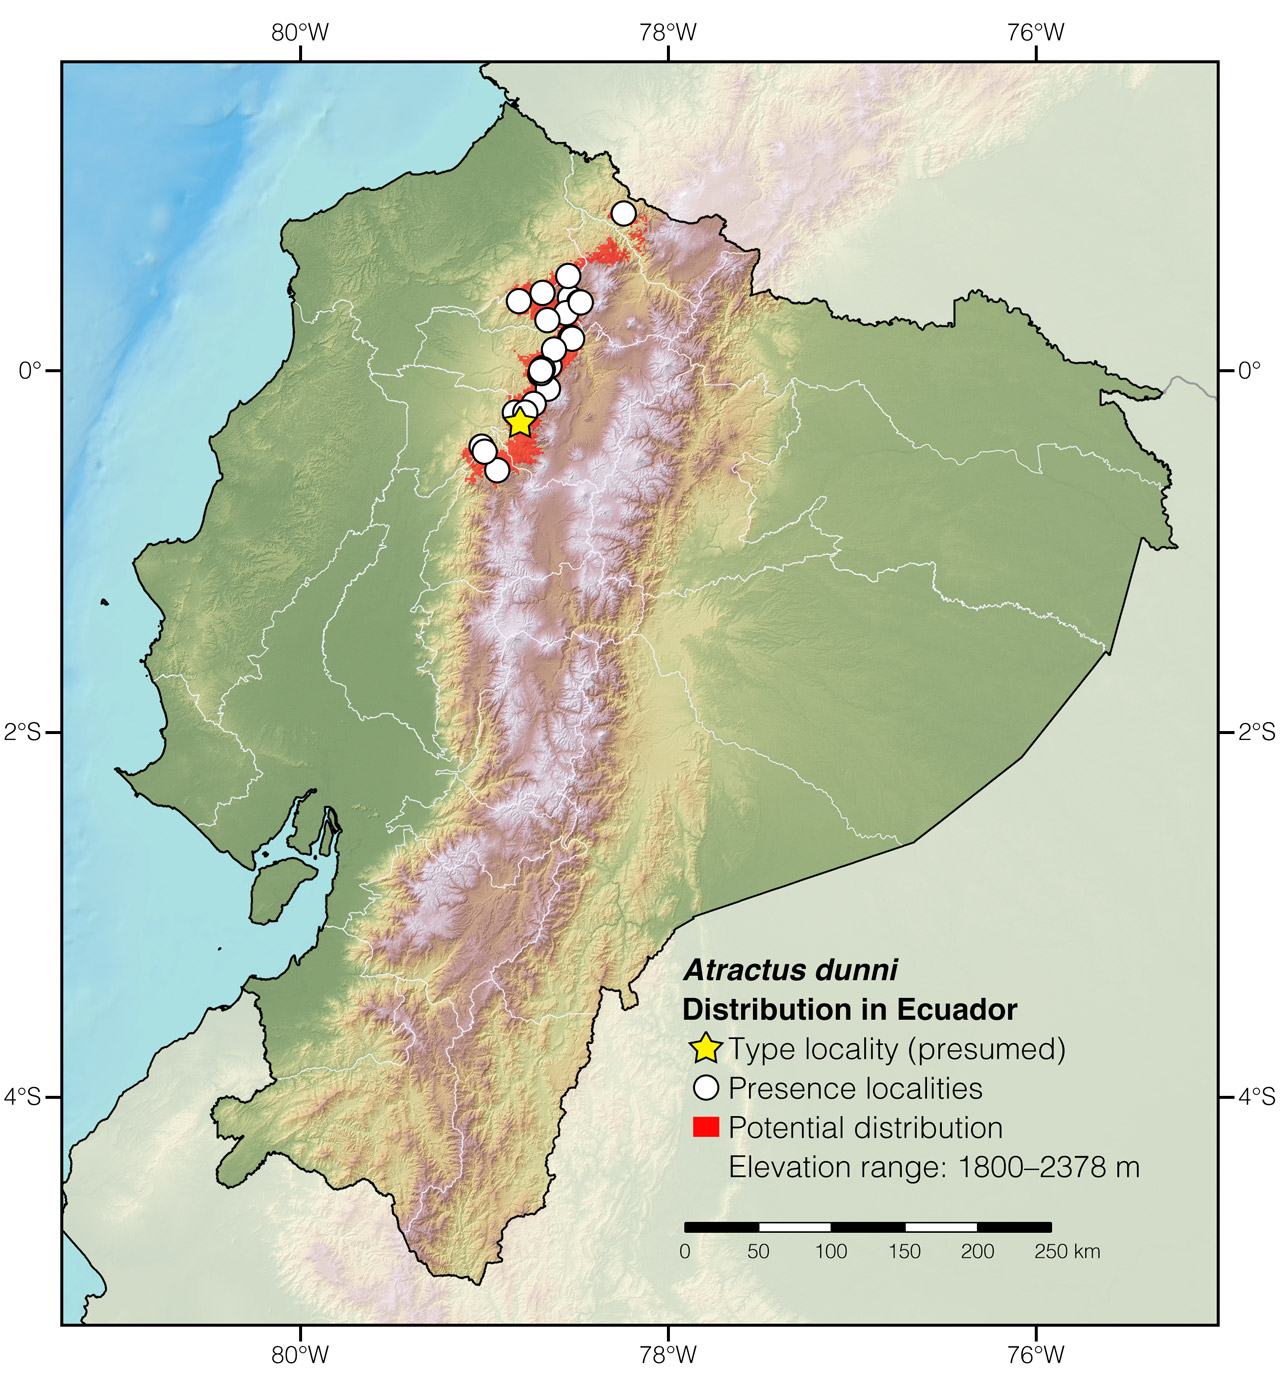 Distribution of Atractus dunni in Ecuador